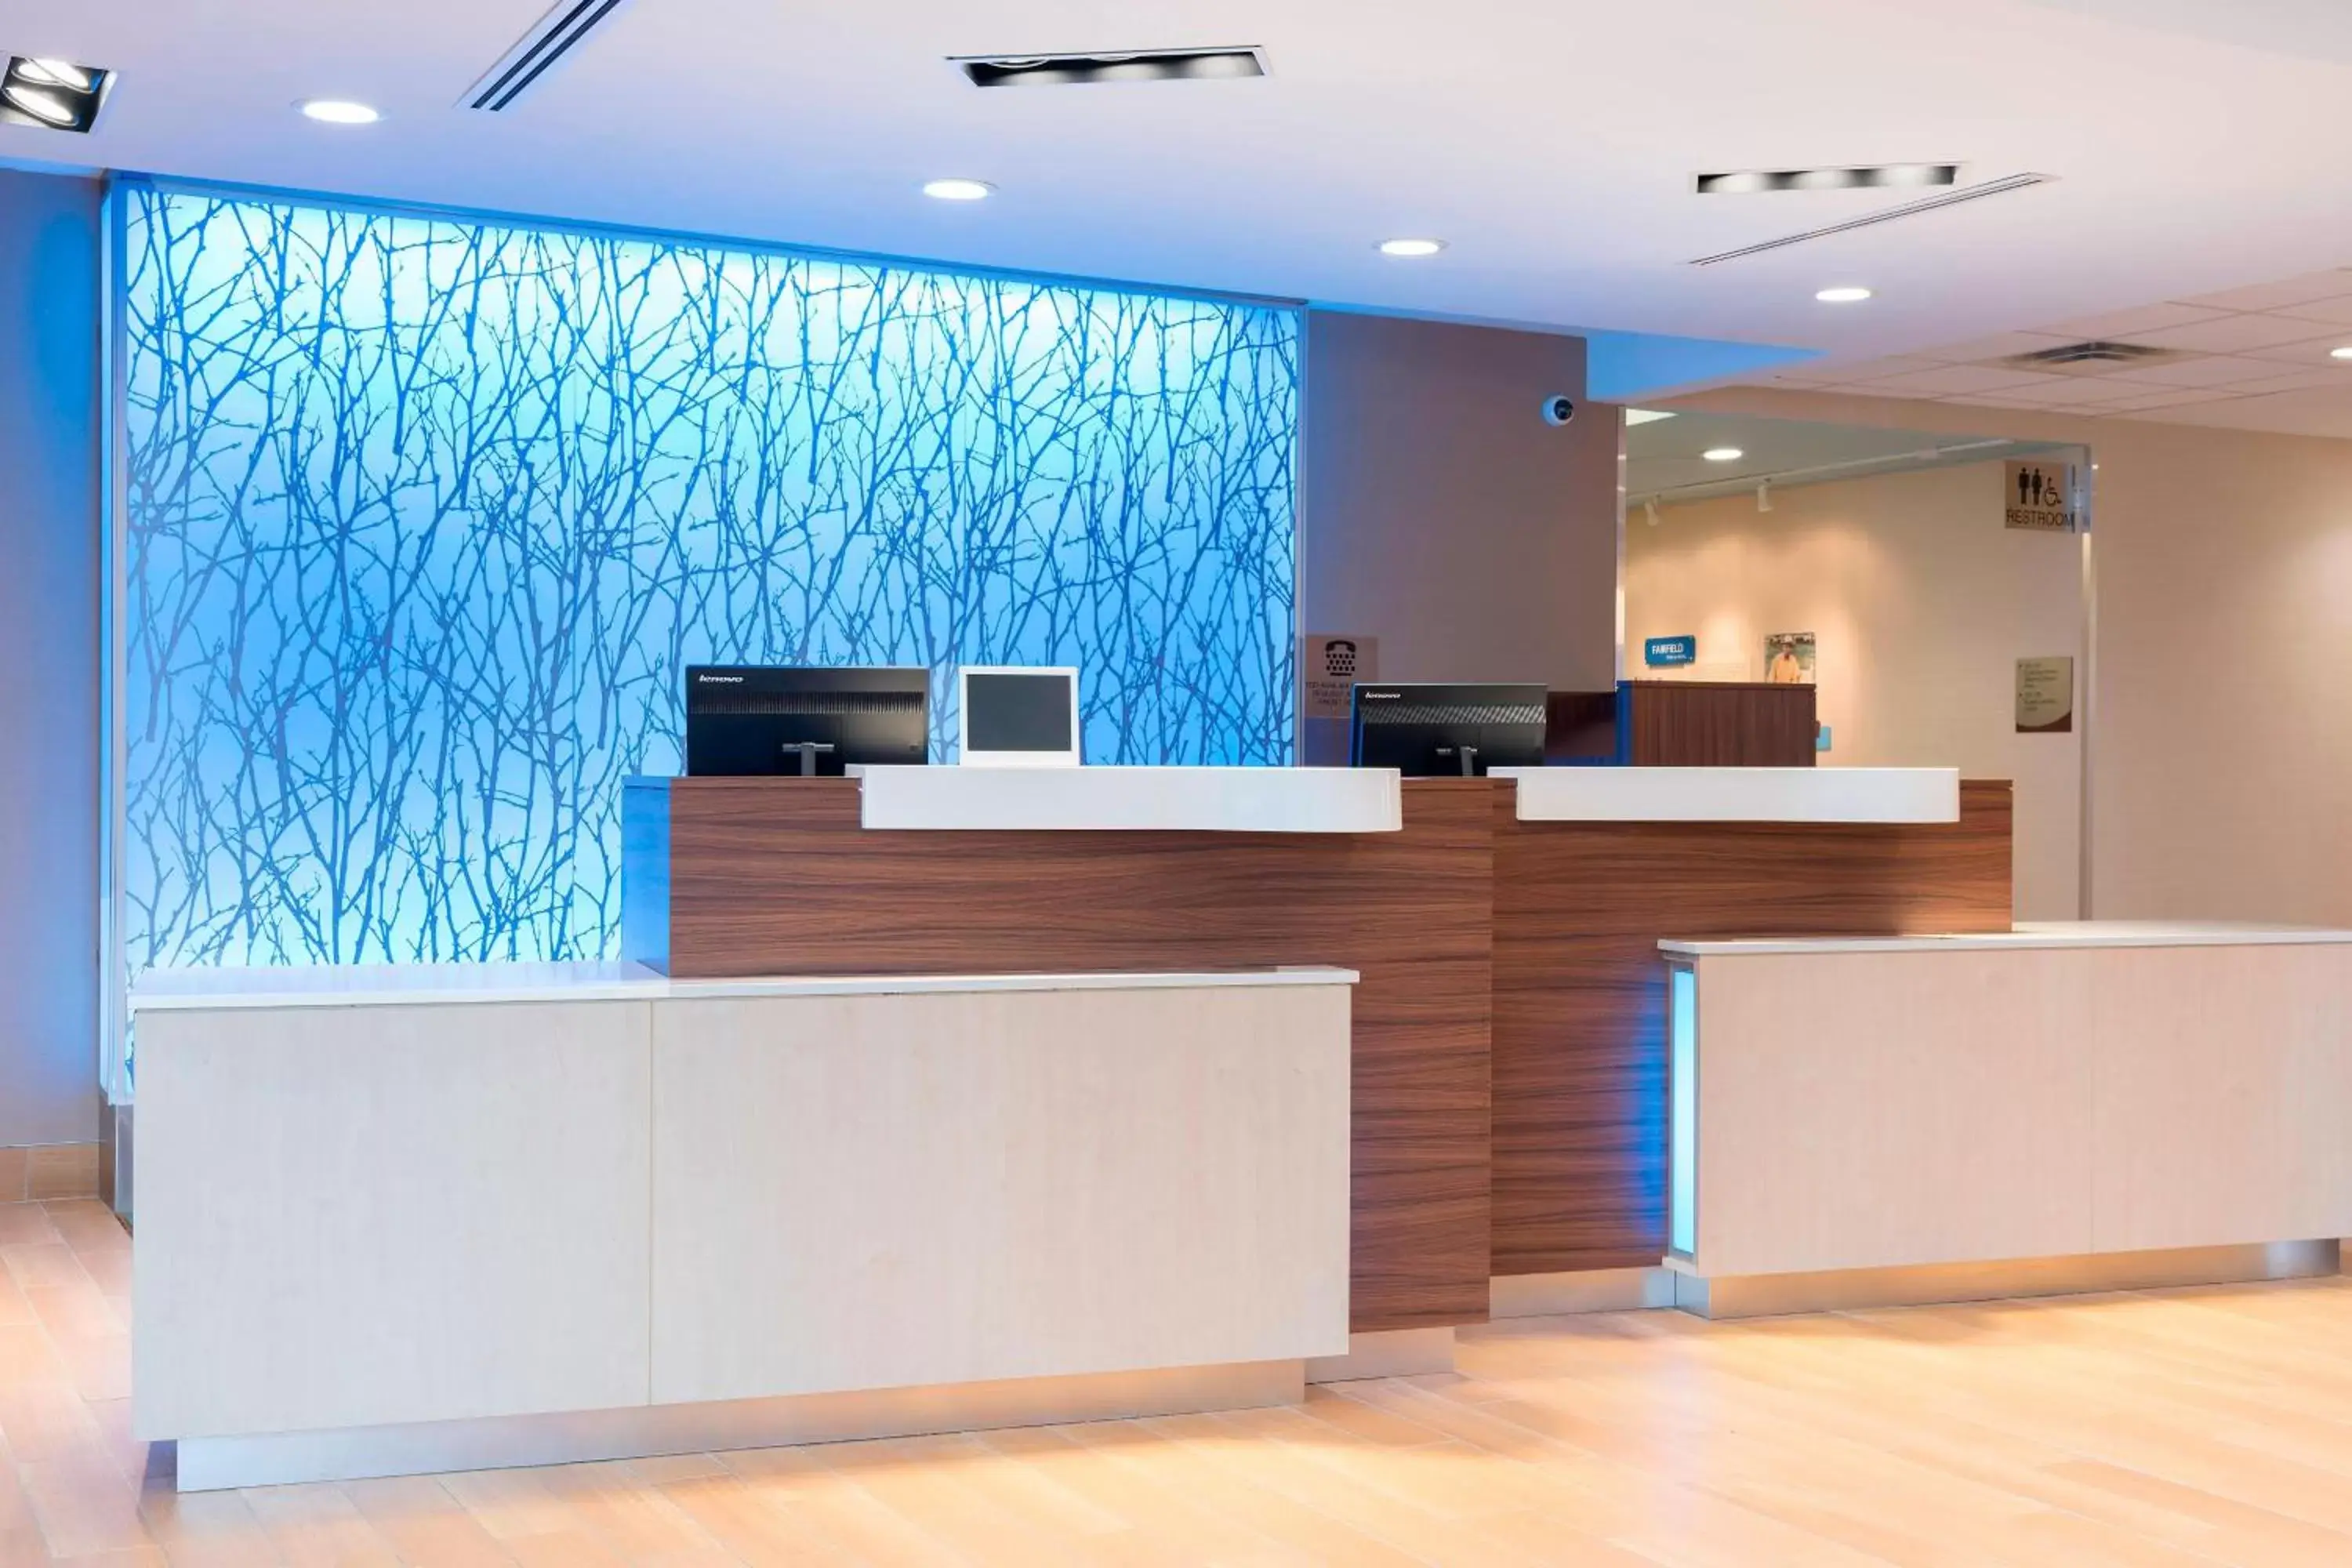 Lobby or reception, Lobby/Reception in Fairfield Inn & Suites by Marriott Medina